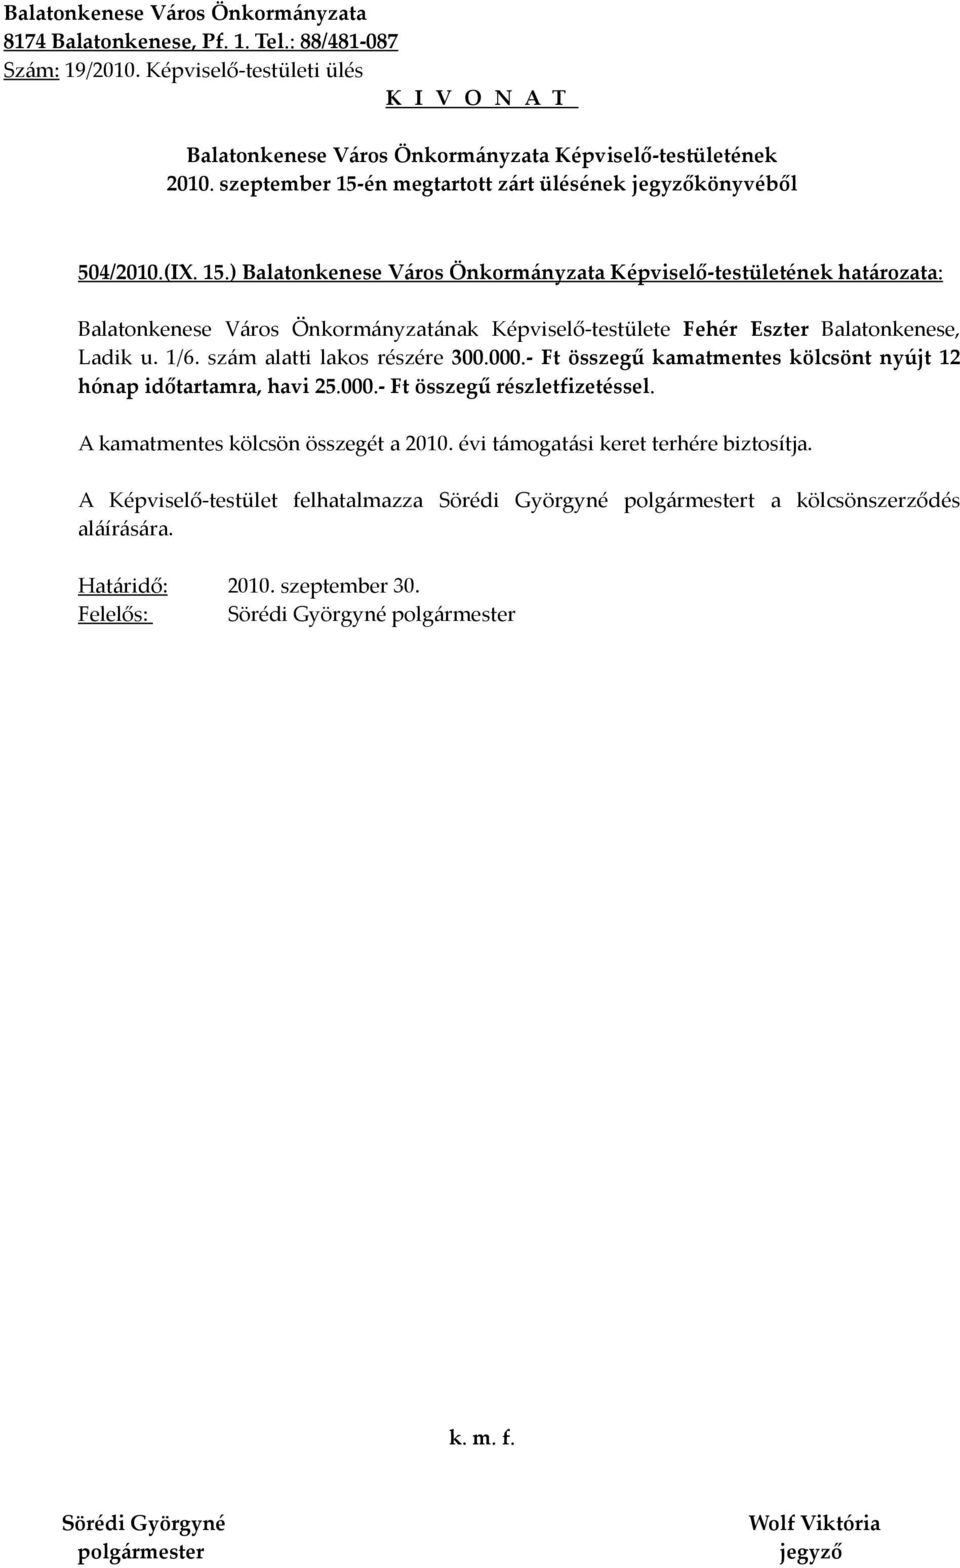 ) határozata: Balatonkenese Város Önkormányzatának Képviselő-testülete Fehér Eszter Balatonkenese, Ladik u. 1/6.